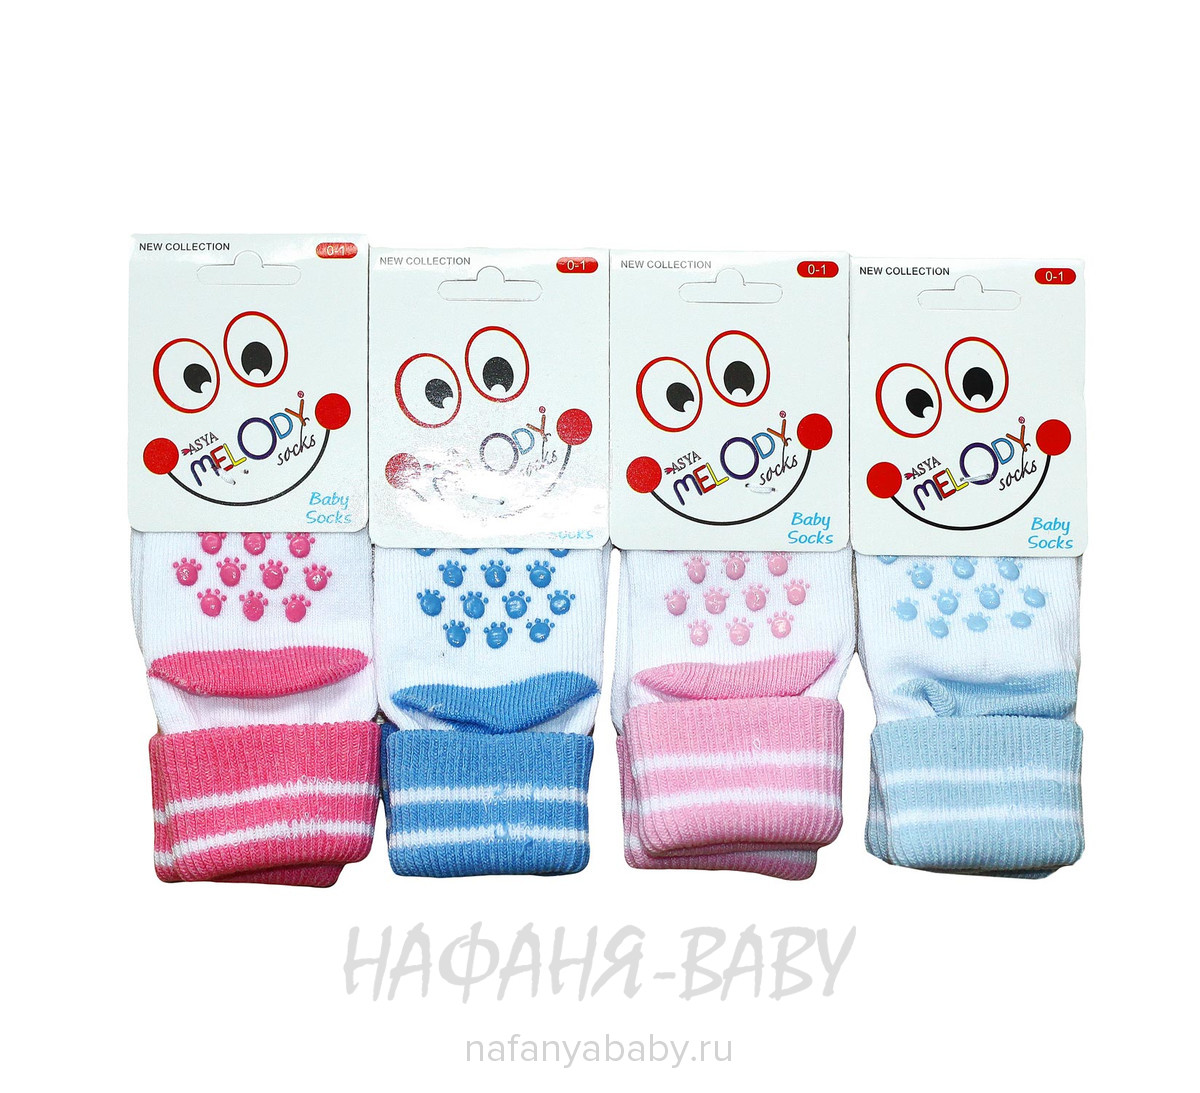 Детские носки MELODY арт: 0005 1-2, 1-4 года, оптом Турция